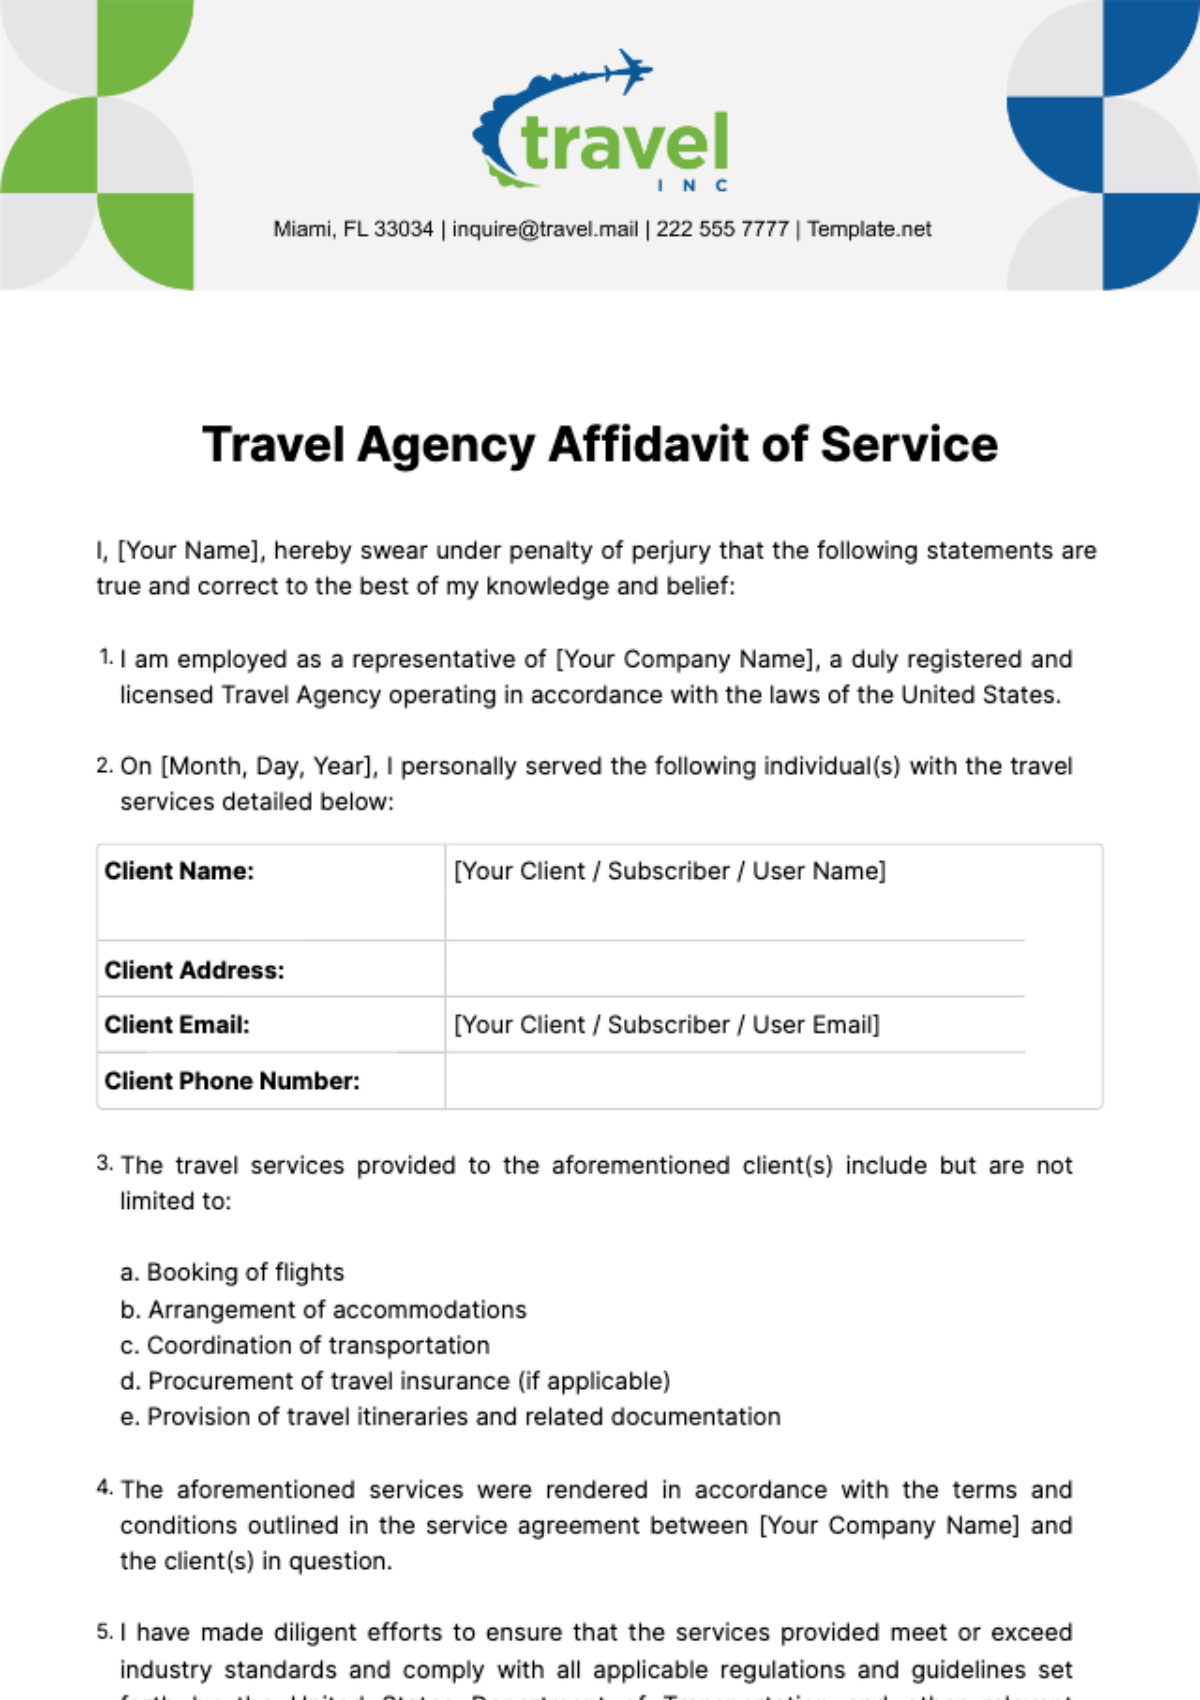 Travel Agency Affidavit of Service Template